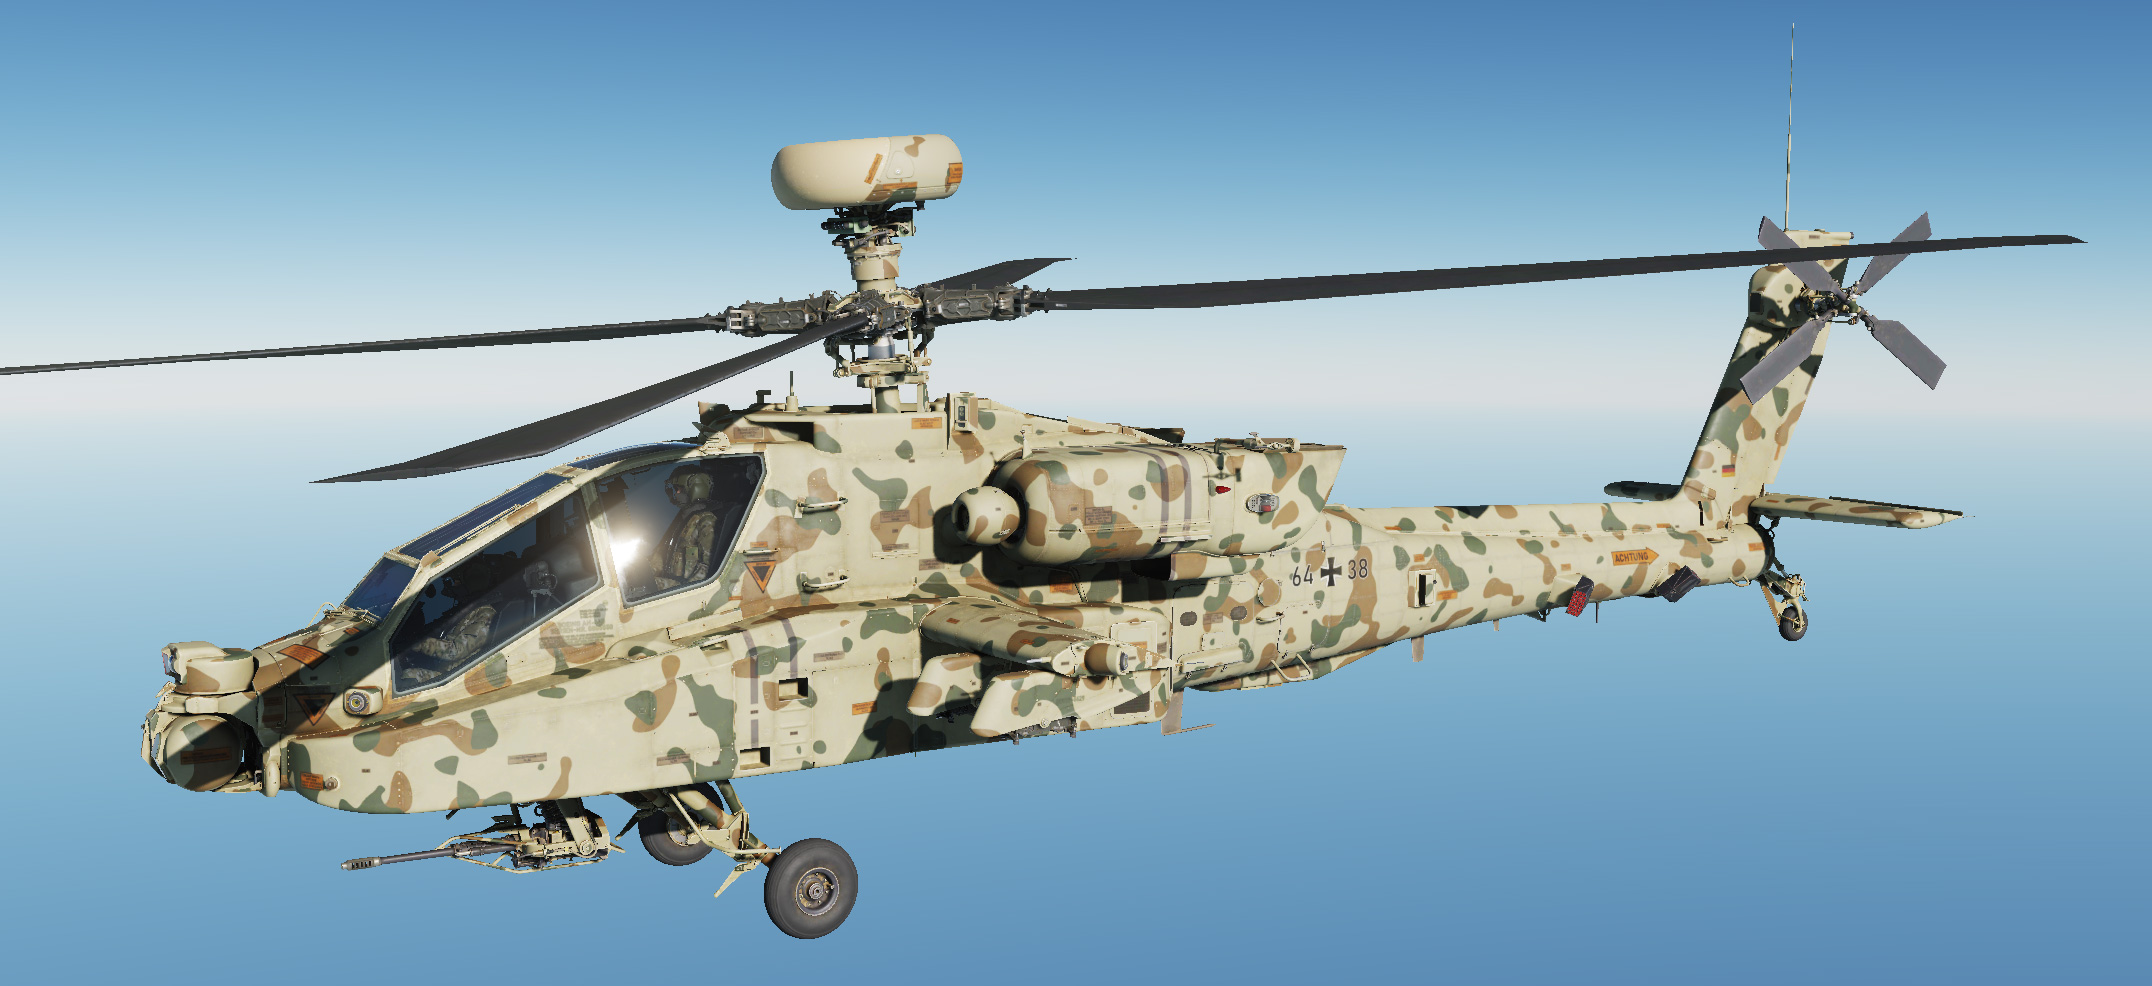 v1.0.0] [AH-64D] German 3-Color Tropentarn Camouflage